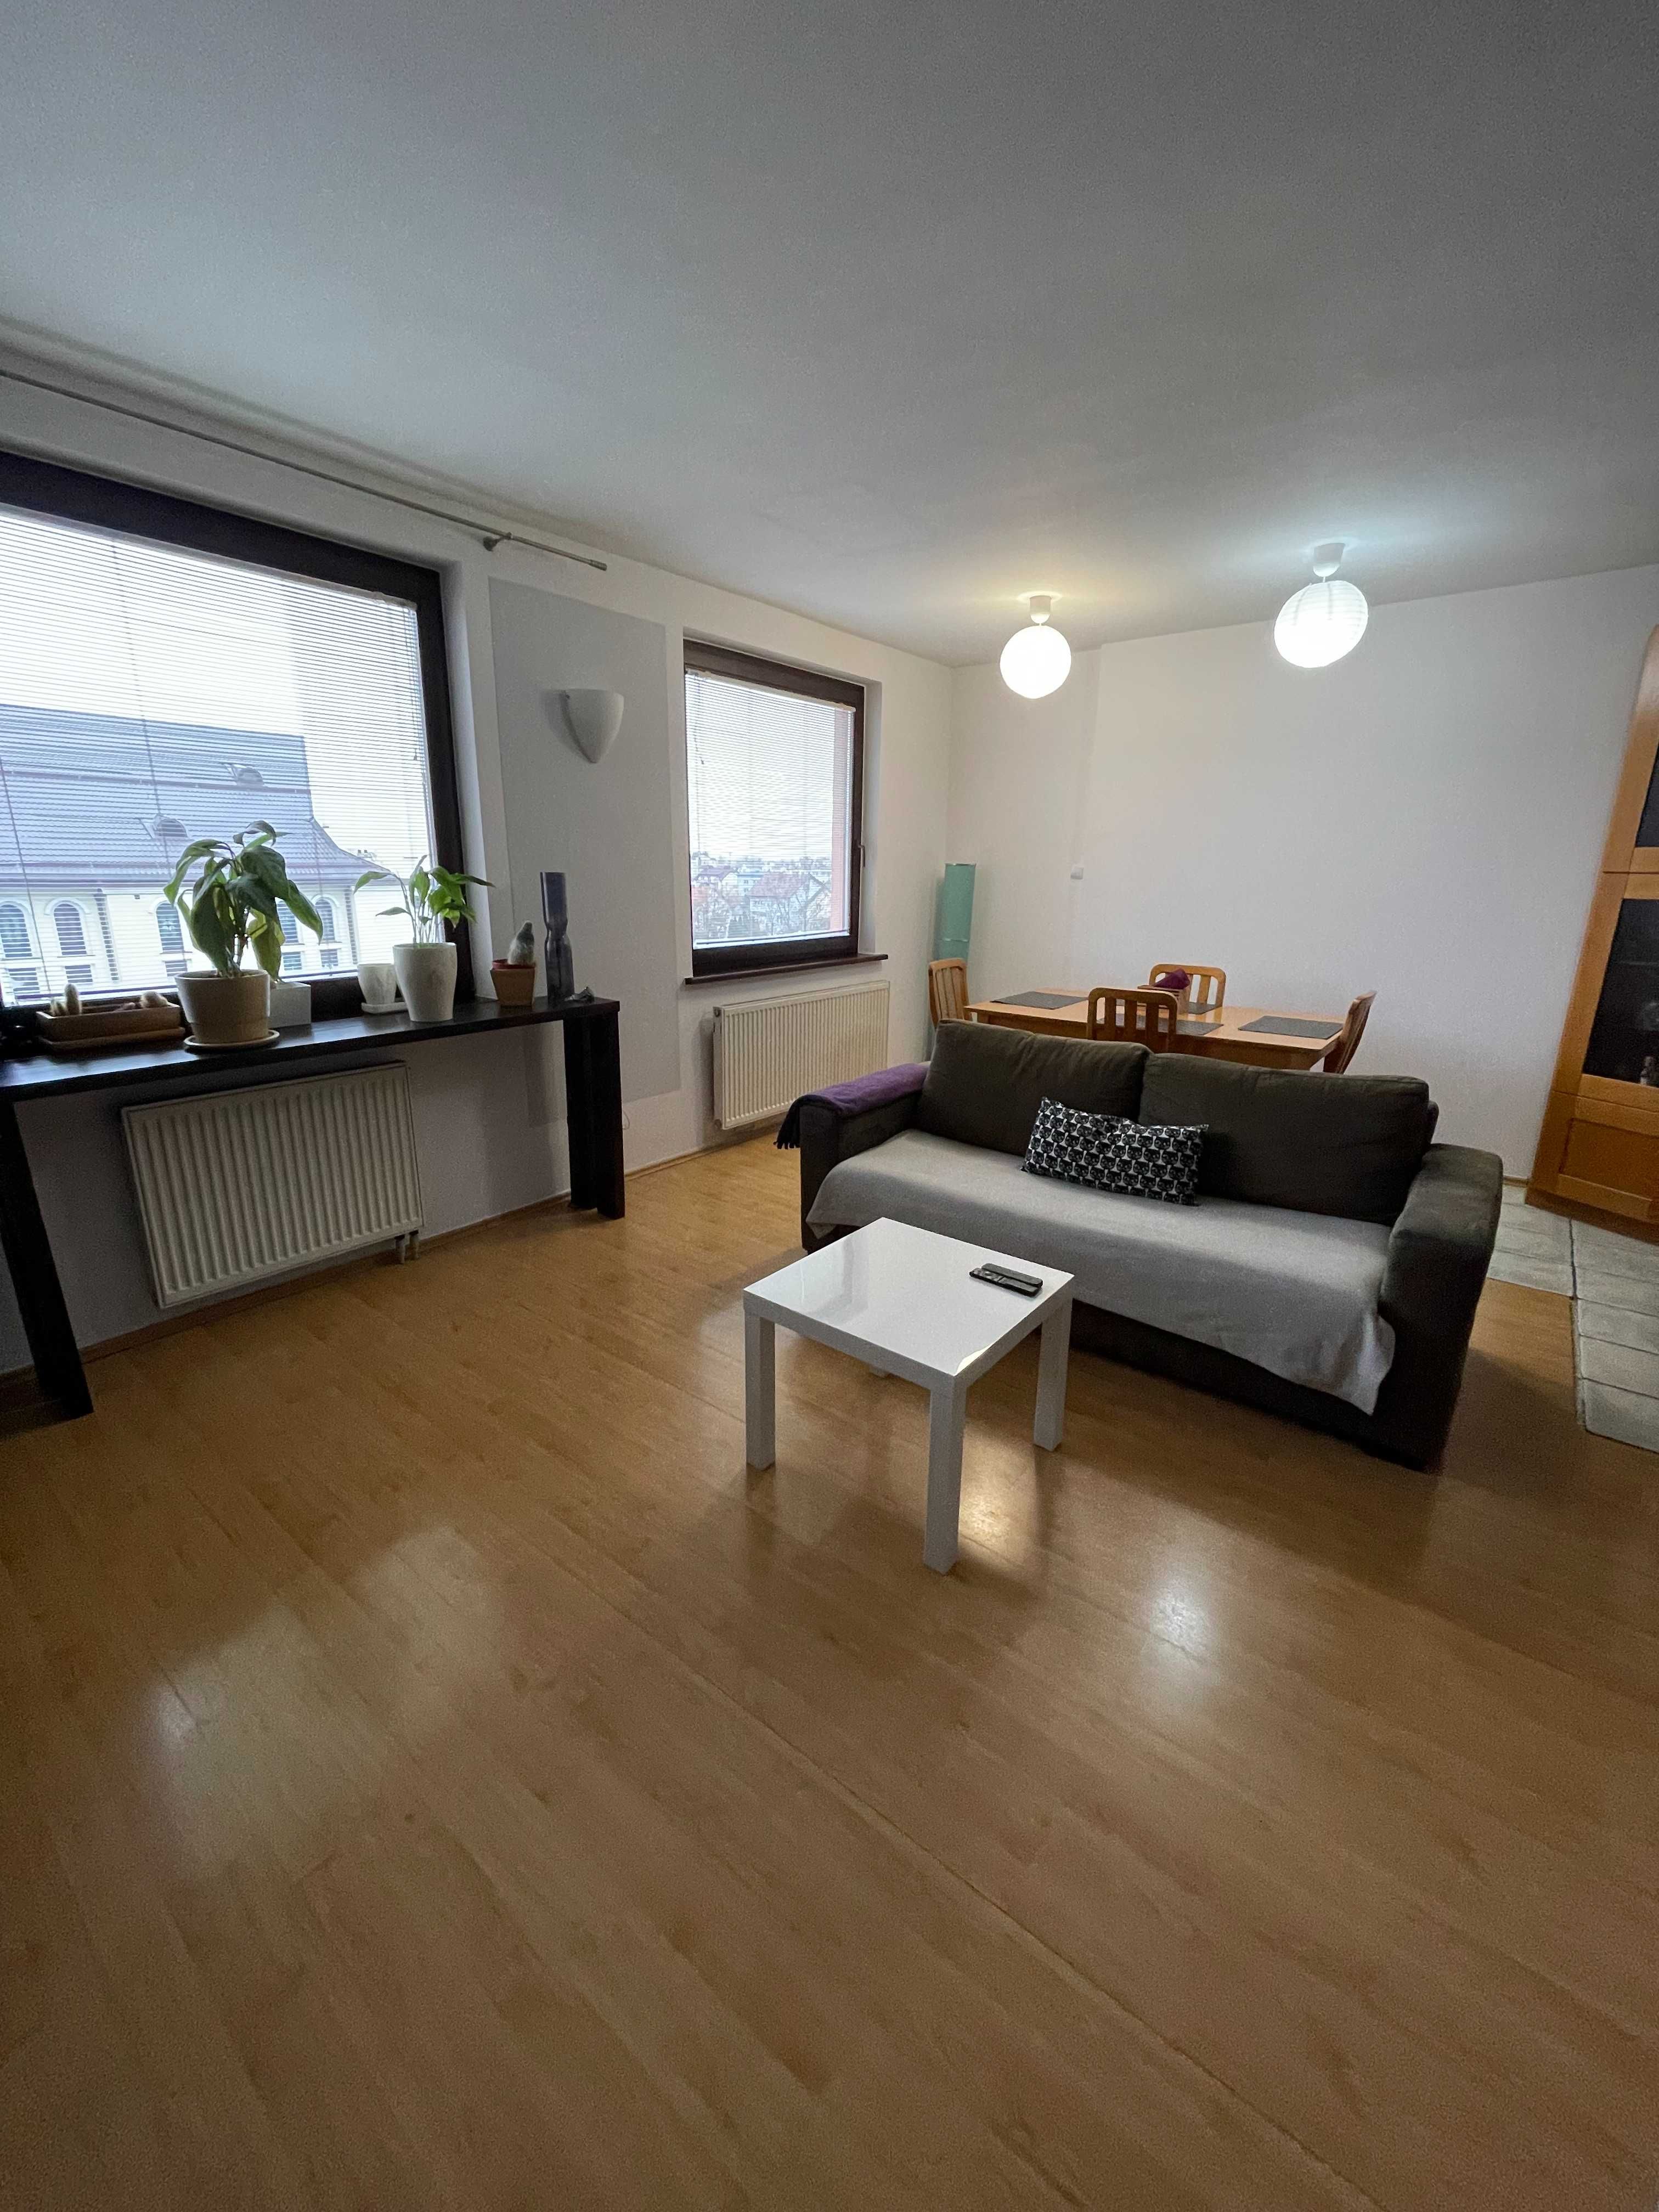 Mieszkanie 3 pokojowe + garderoba, 2 poziomowe, 80 m2, garaż, balkon